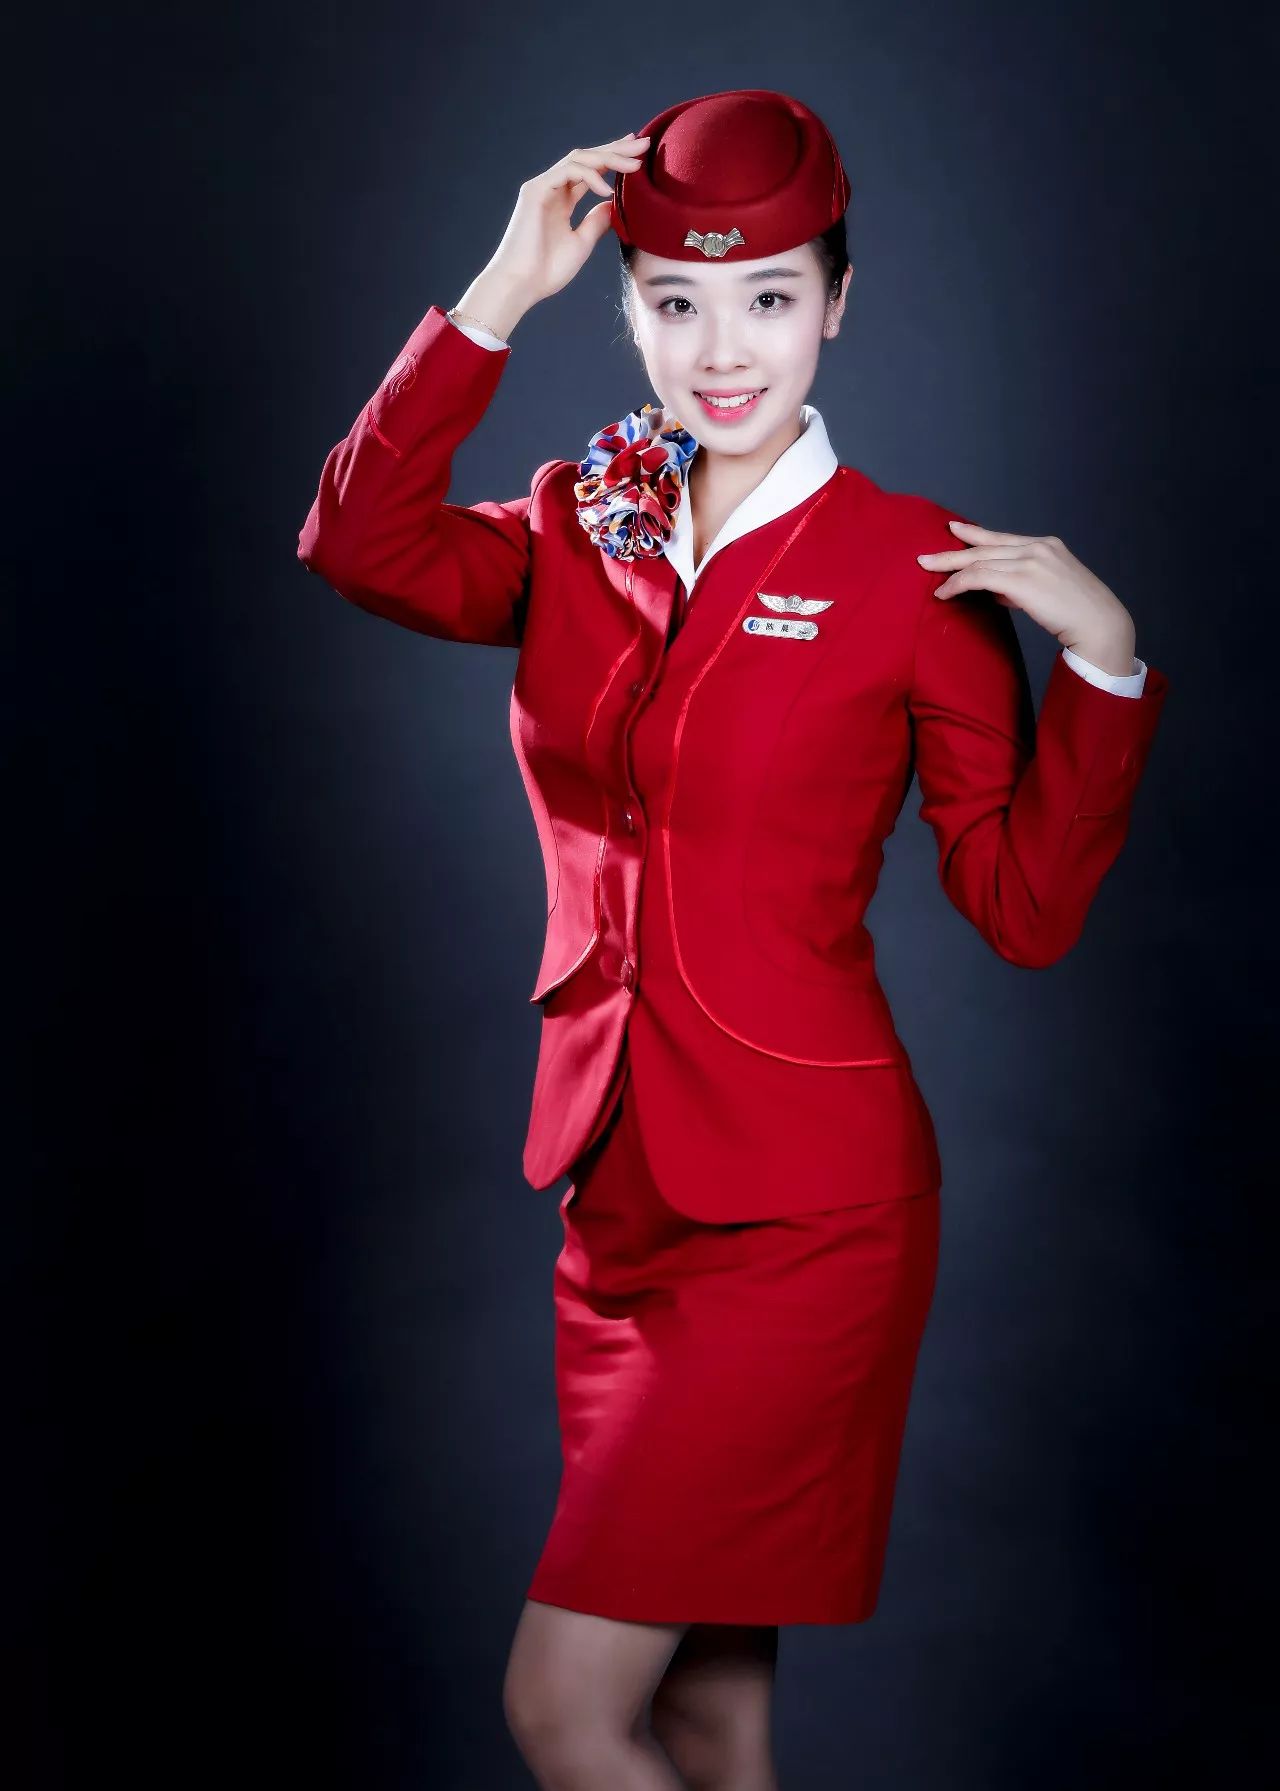 山东航空公司空姐制服图片